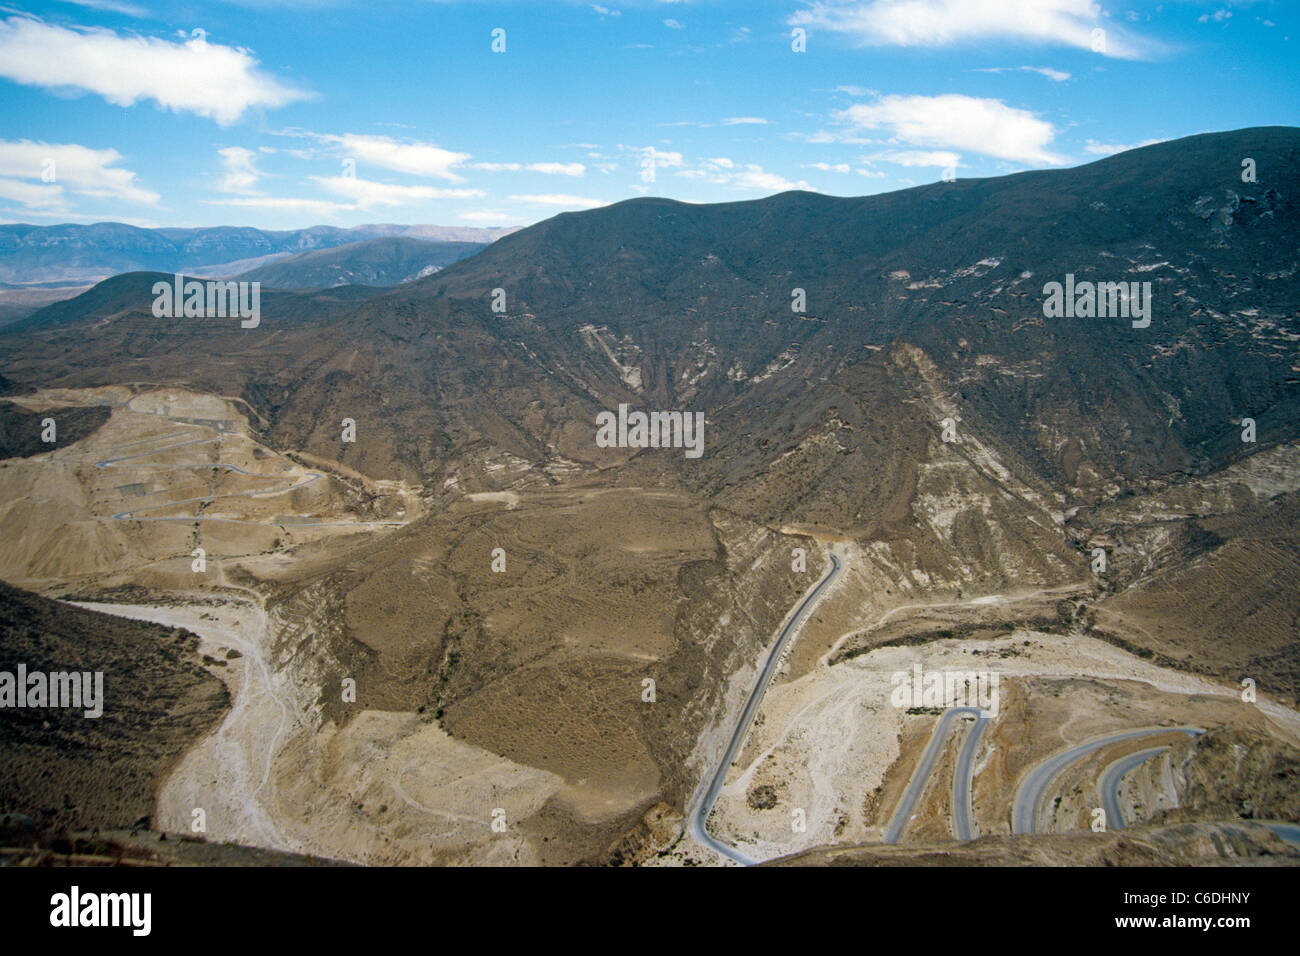 Berglandschaft auf dem Weg nach Jebel al-Qamar, nahe der iranischen Grenze, On the way to, Jebel al-Qamar, mountains Stock Photo